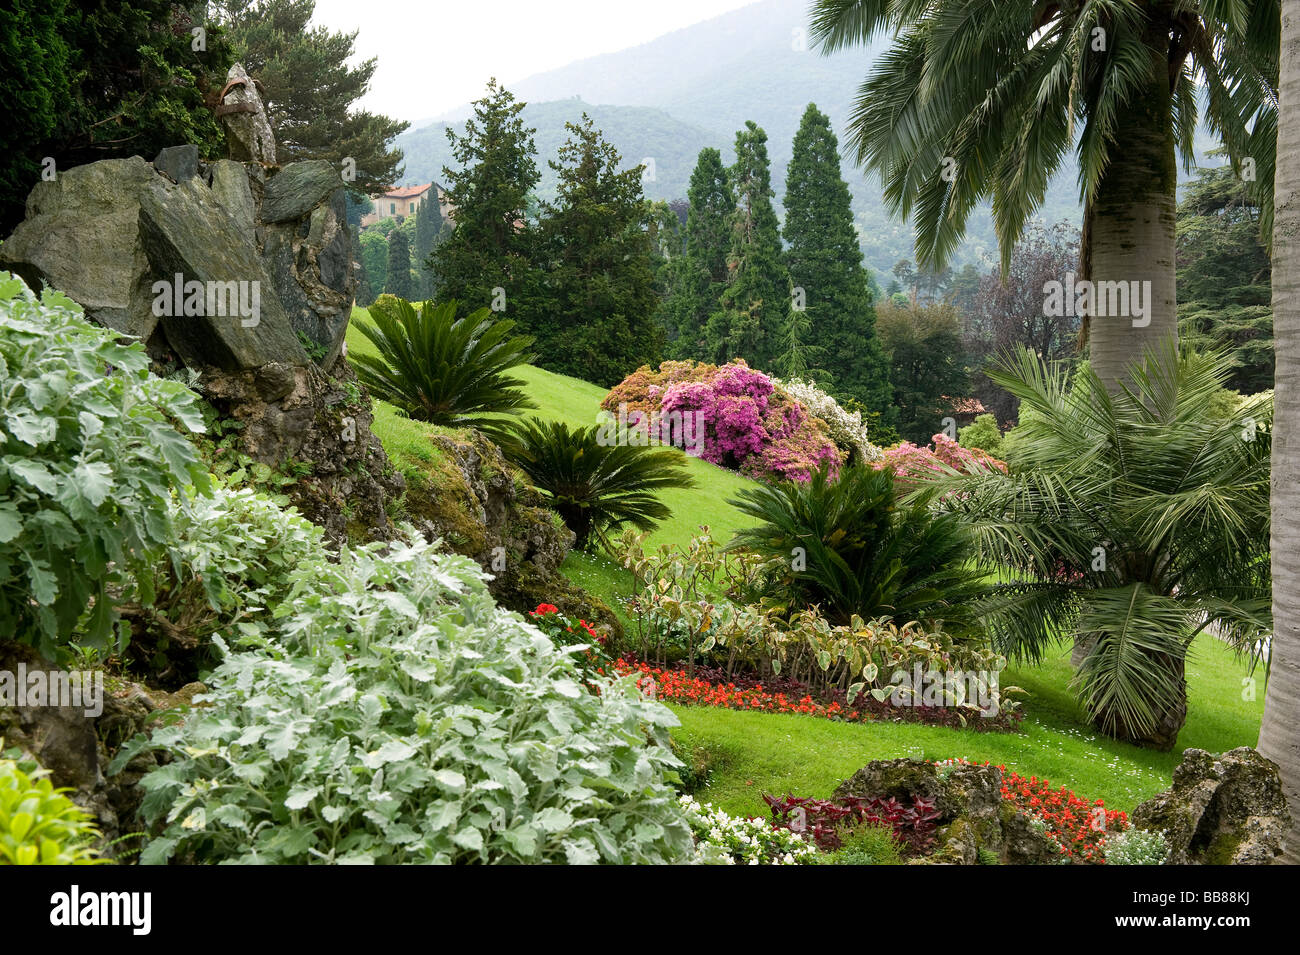 garden at villa melzi, bellagio, lake como, italy Stock Photo